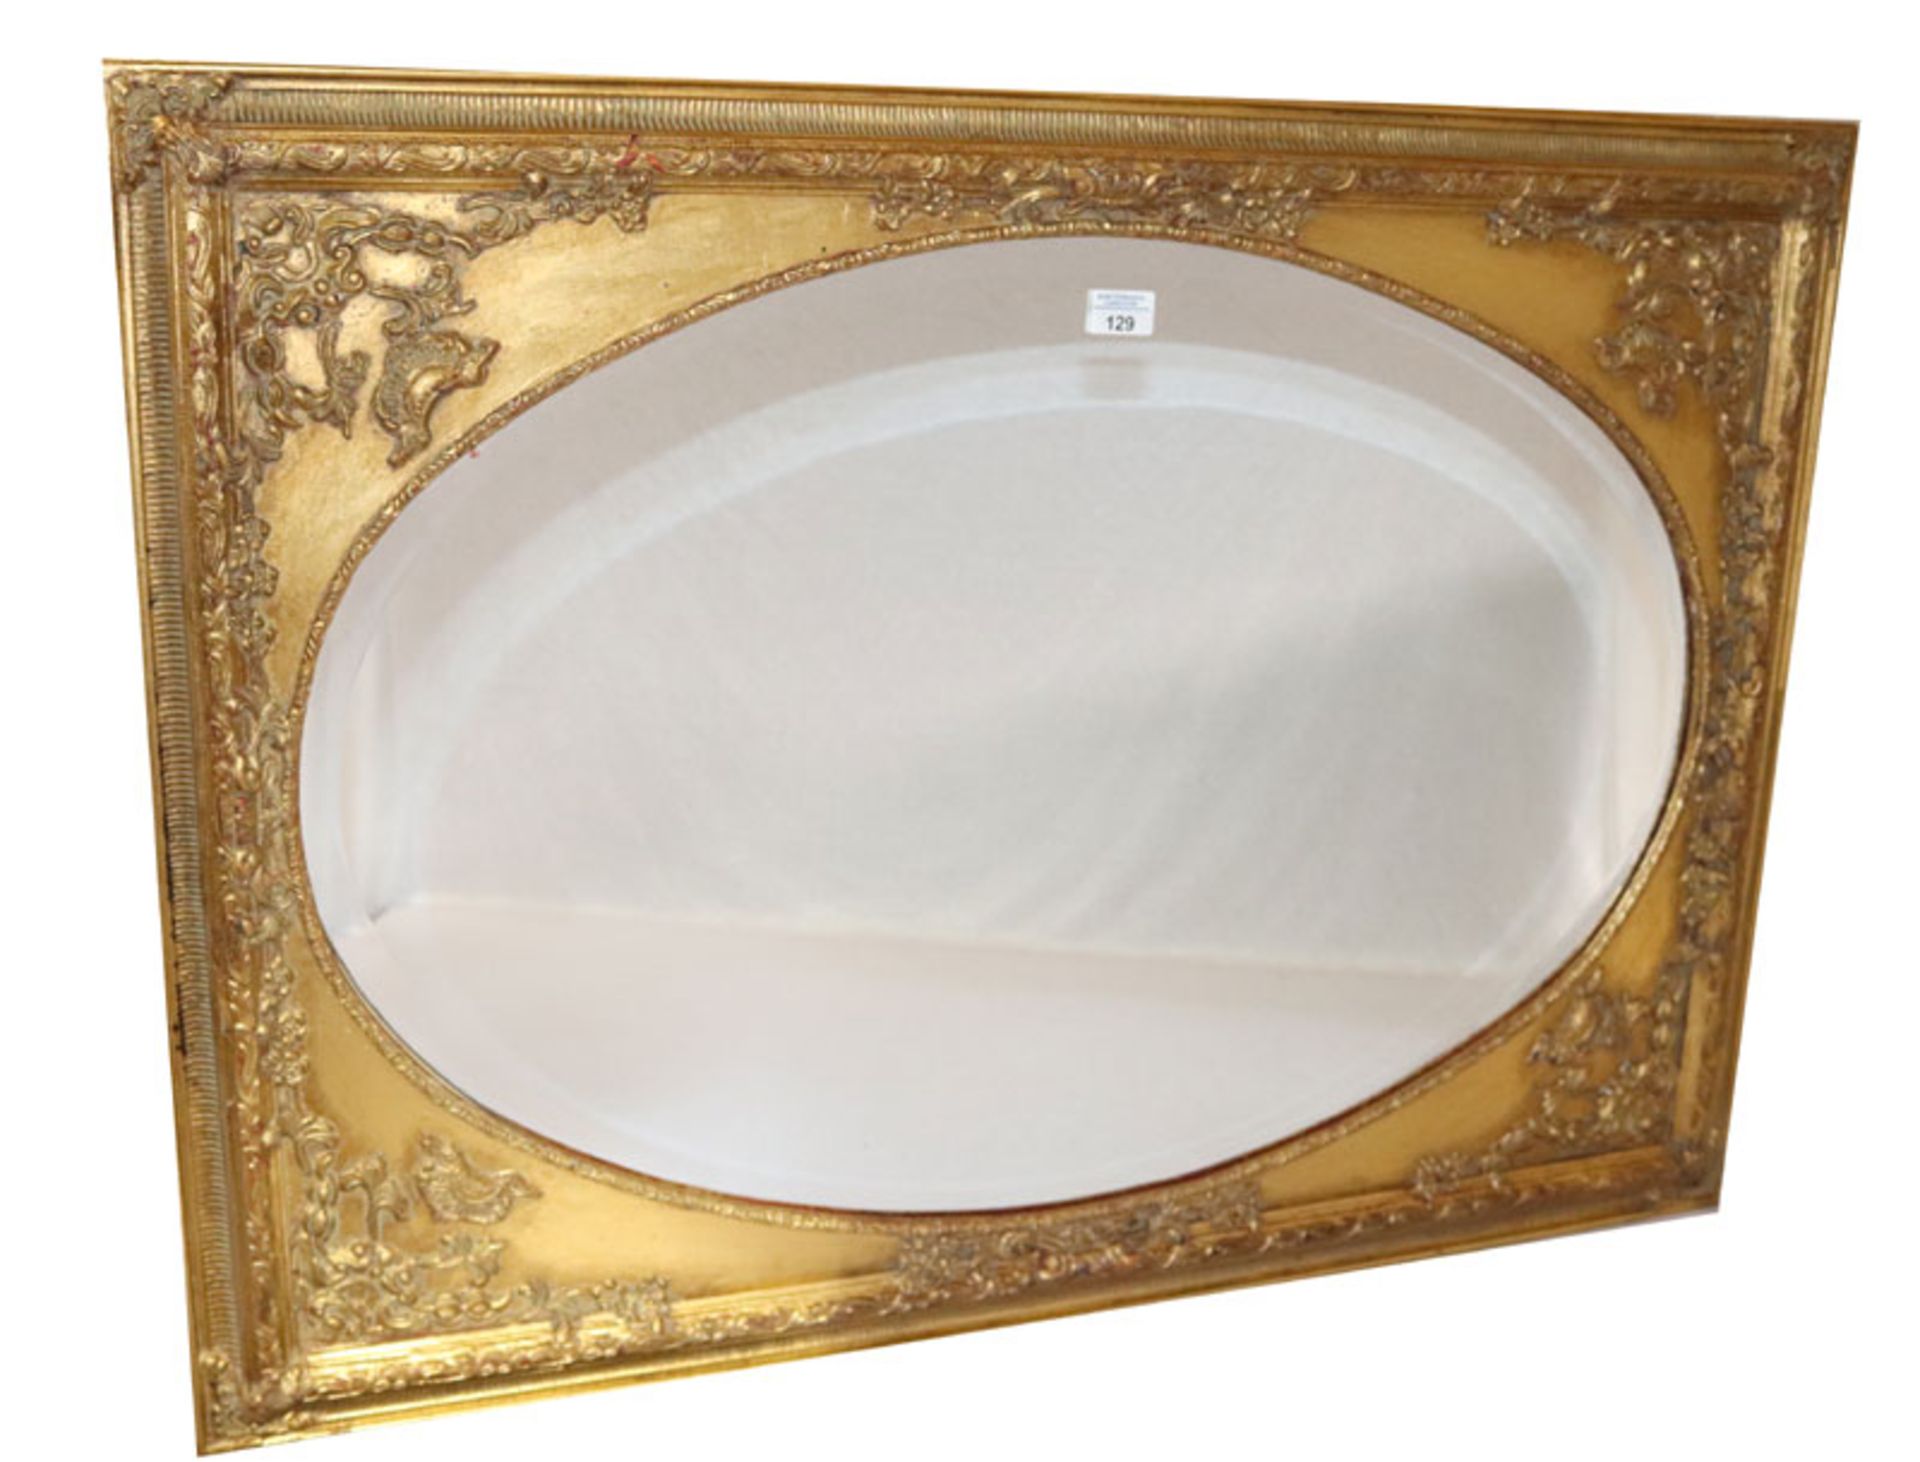 Wandspiegel in dekorativem Goldrahmen, ovaler Spiegel mit Facettenschliff, incl. Rahmen 105 cm x